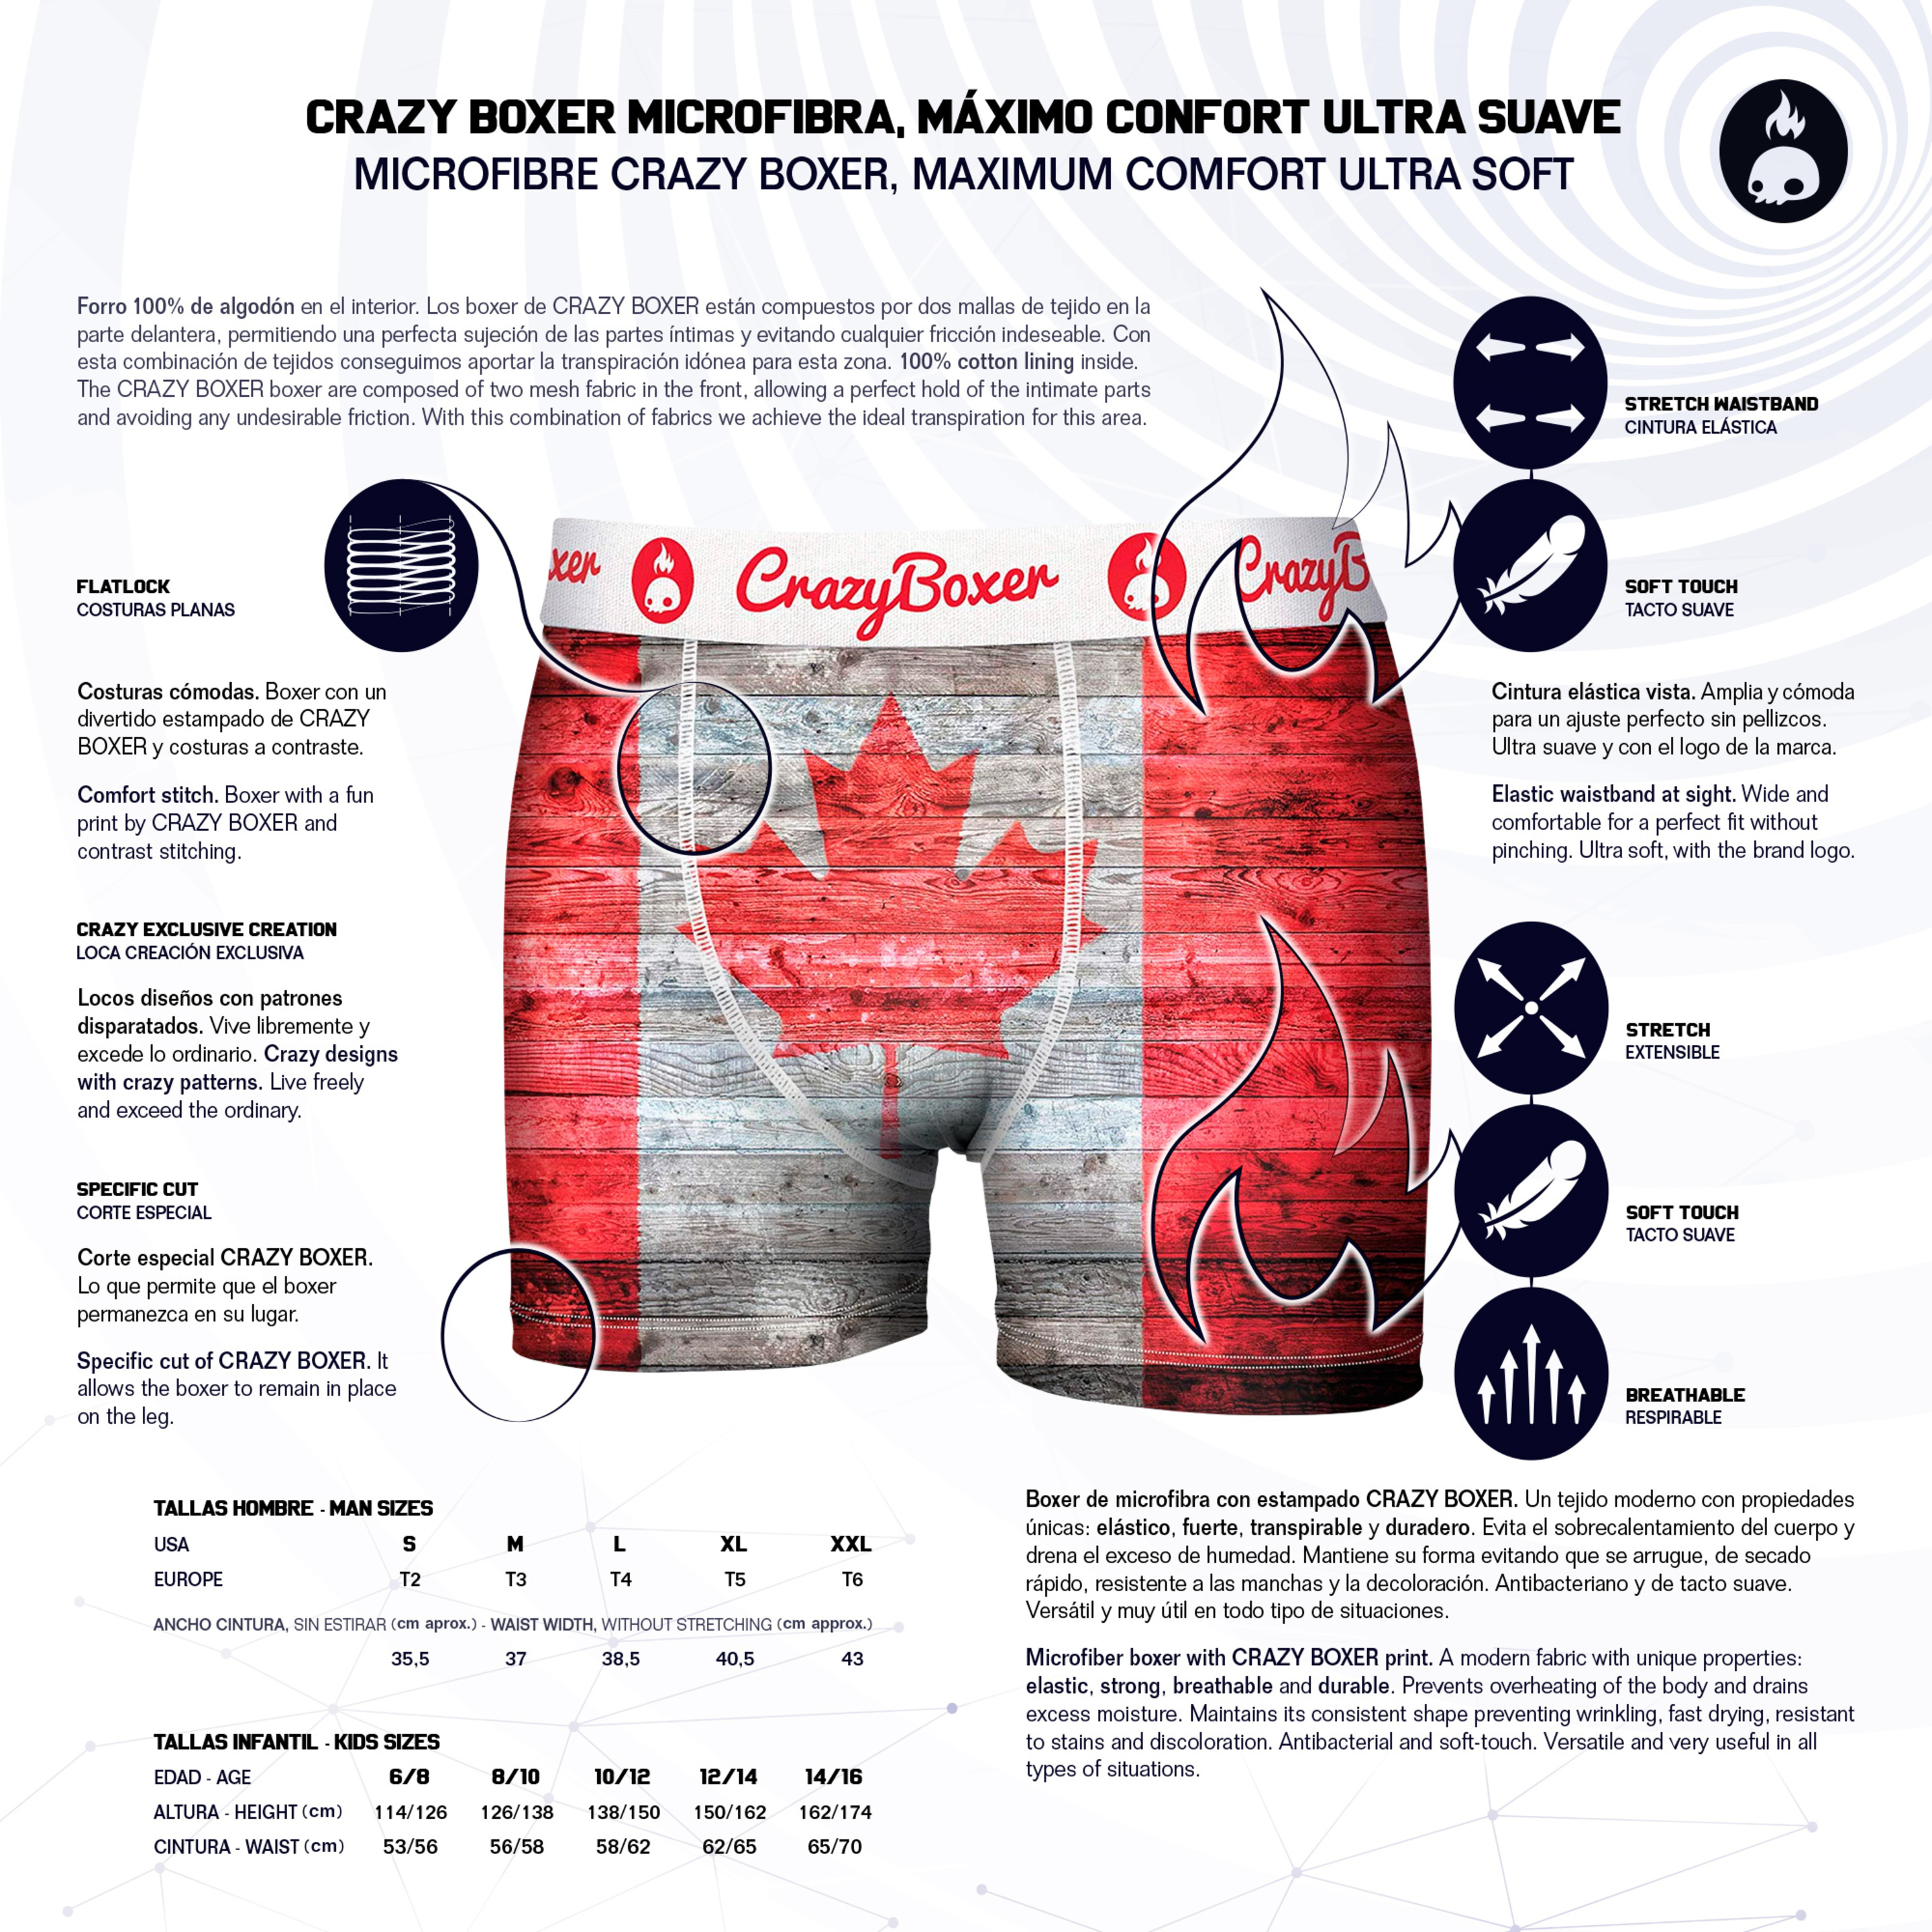 Calzoncillos Crazy Boxer Canada